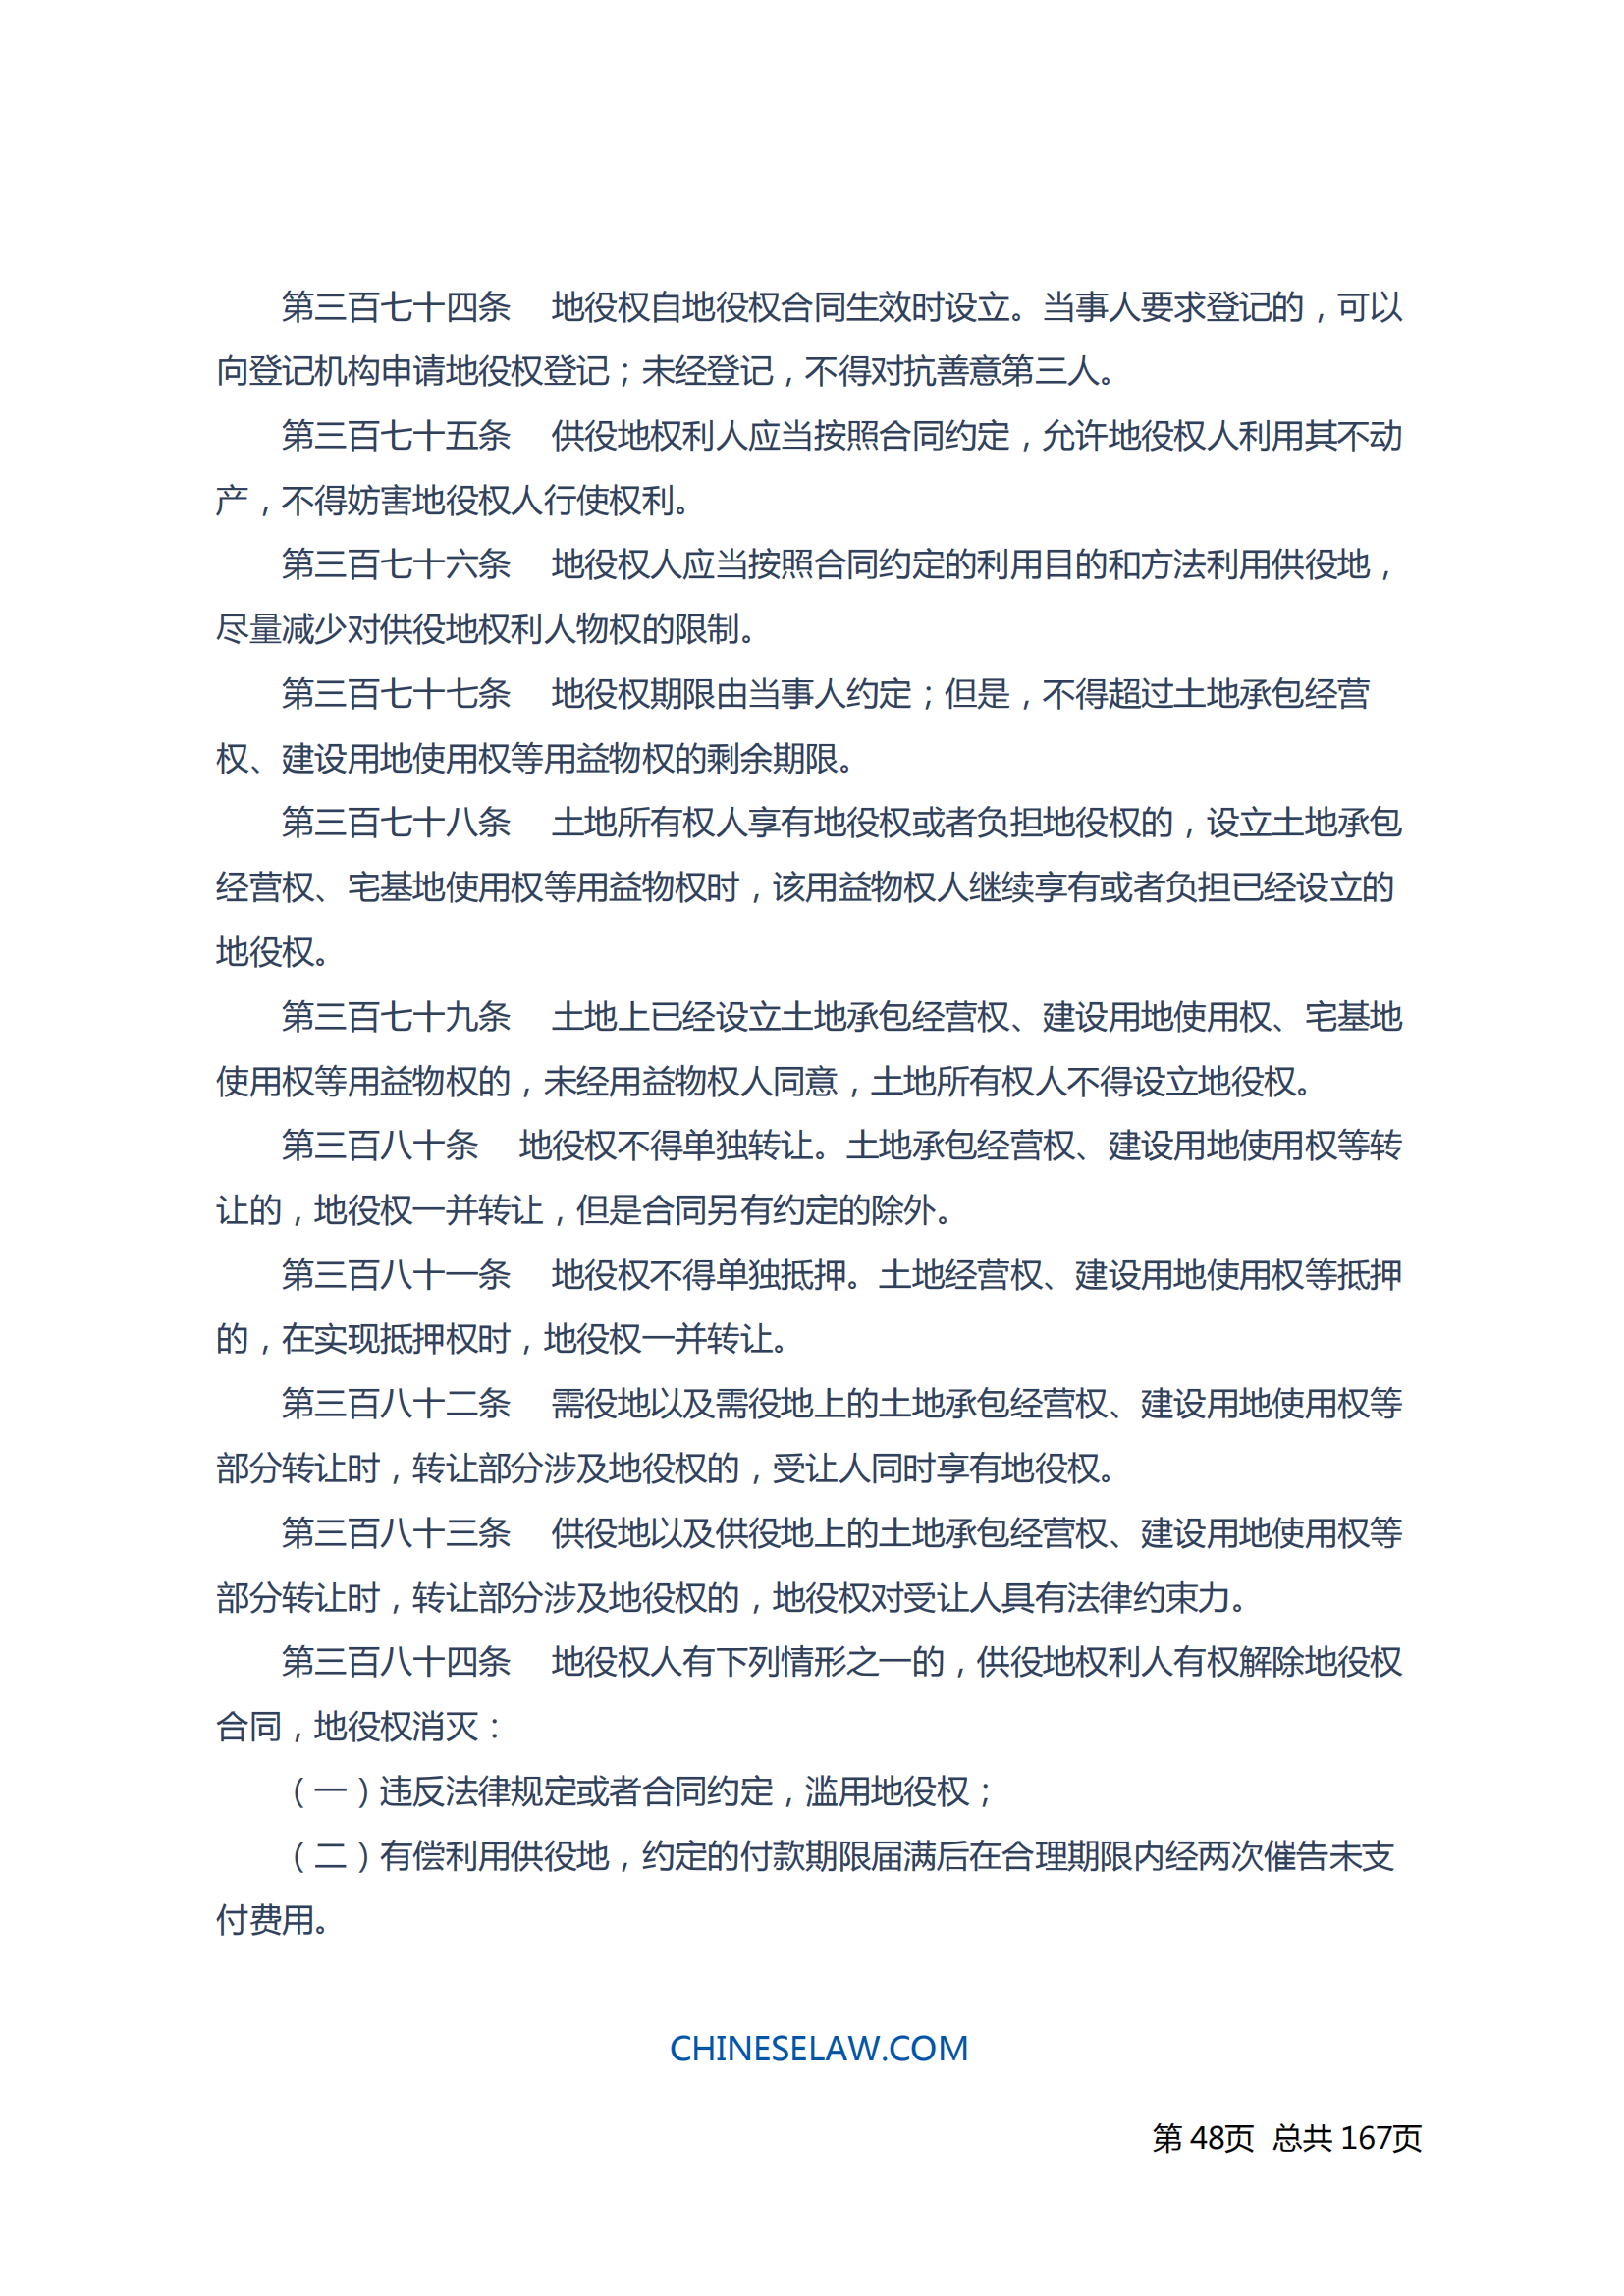 中华人民共和国民法典_47